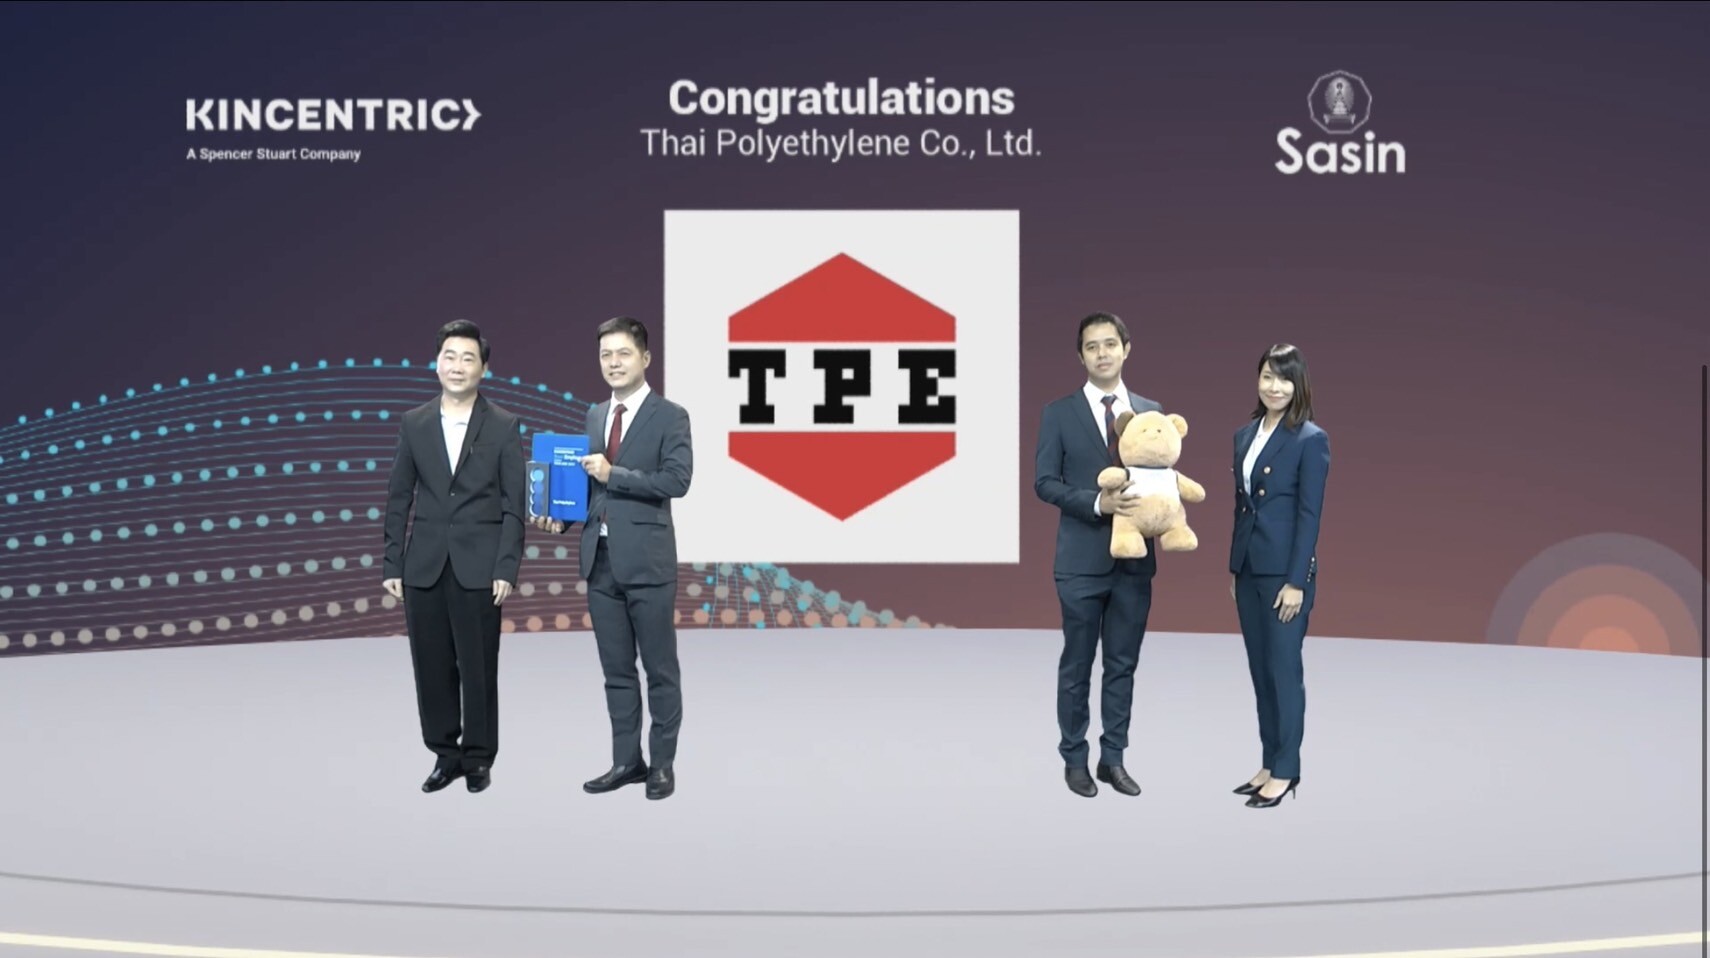 บริษัท ไทยโพลิเอททีลีน ในเอสซีจี เคมิคอลส์ คว้ารางวัลสุดยอดองค์กรนายจ้างดีเด่นแห่งประเทศไทย ปี 64 จากสถาบันด้านทรัพยากรบุคคลระดับโลก